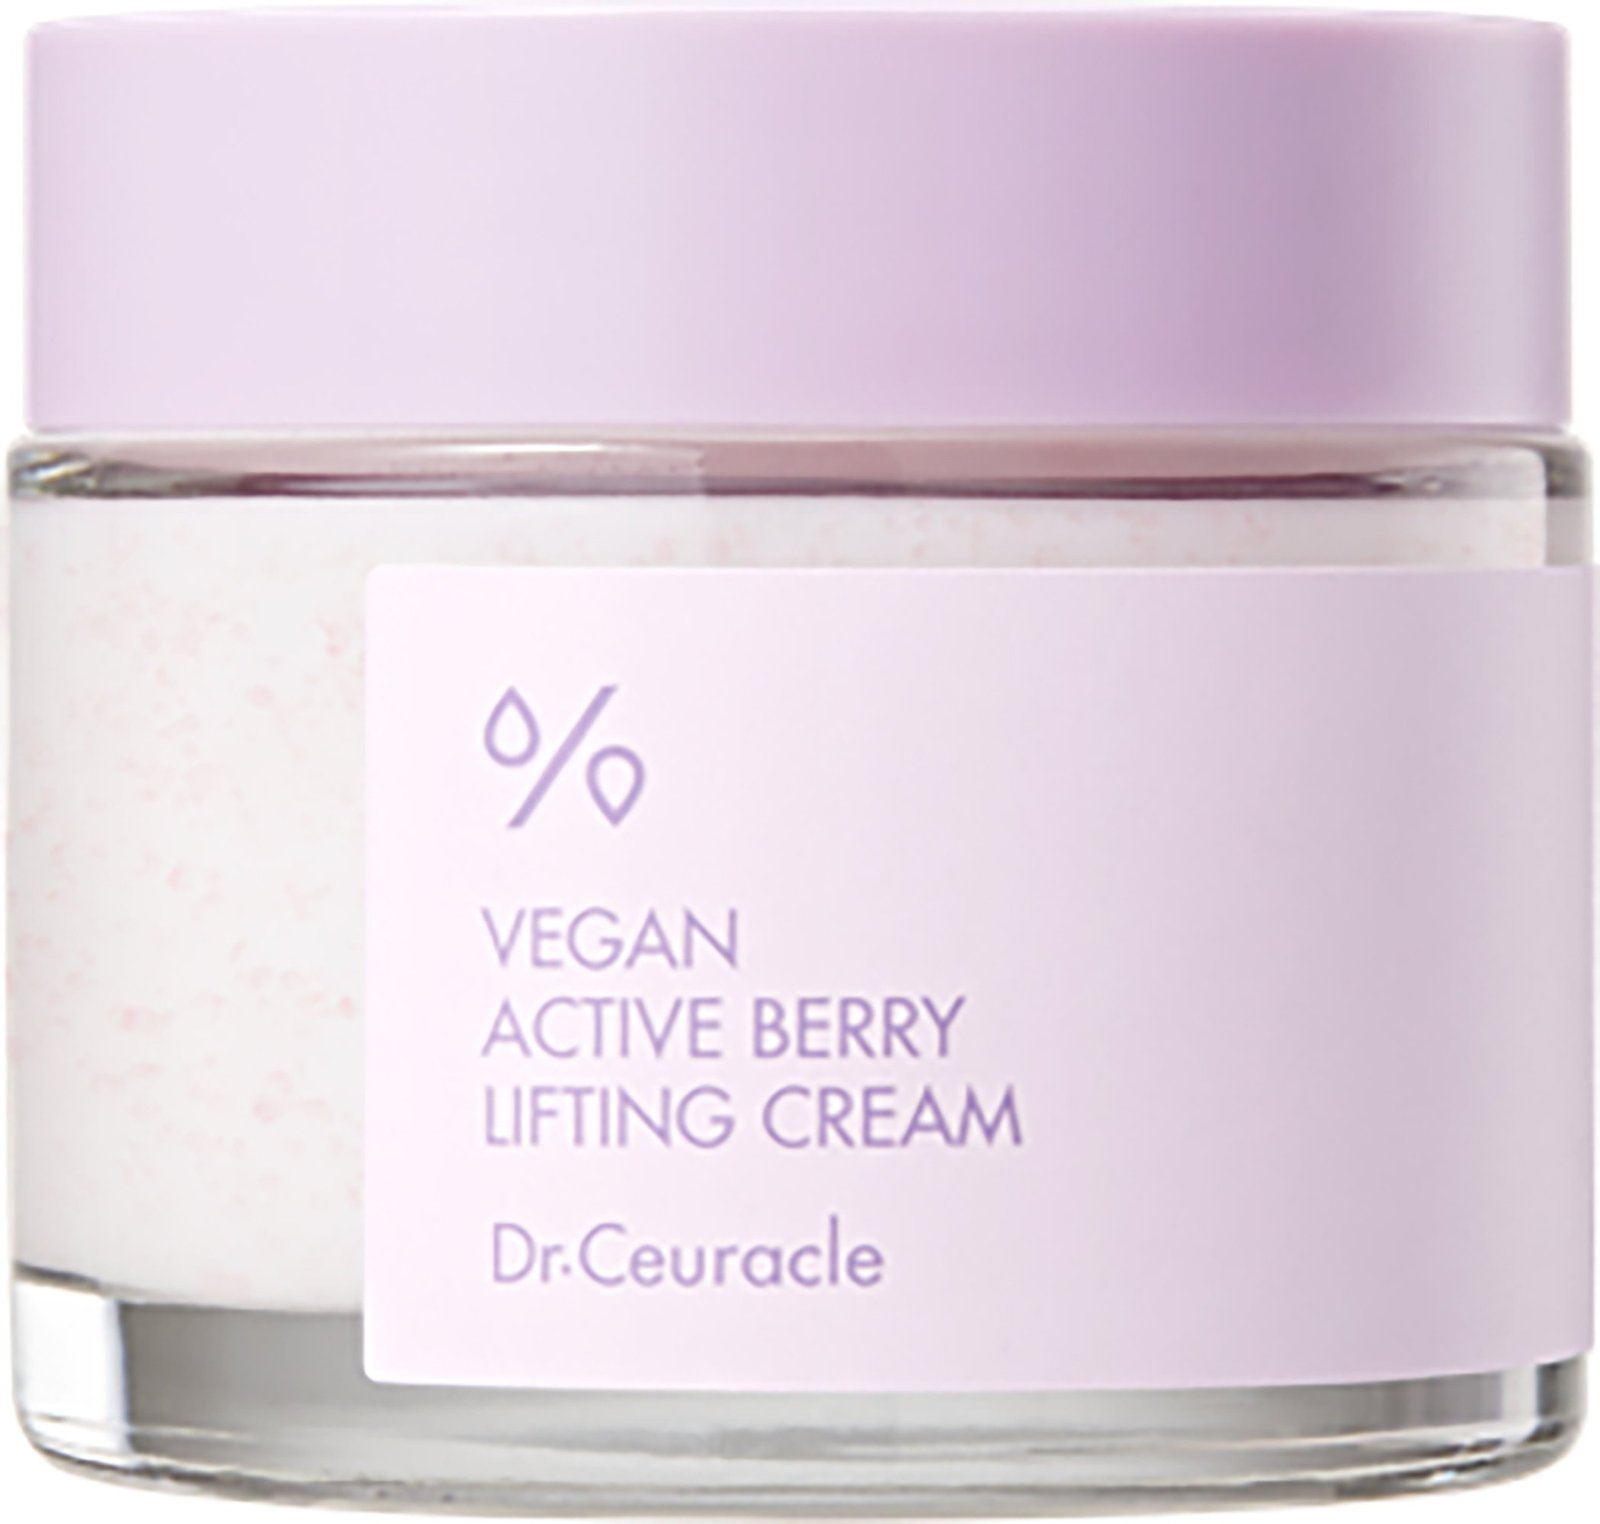 Dr Ceuracle Vegan Active Berry Lifting Cream 75ml